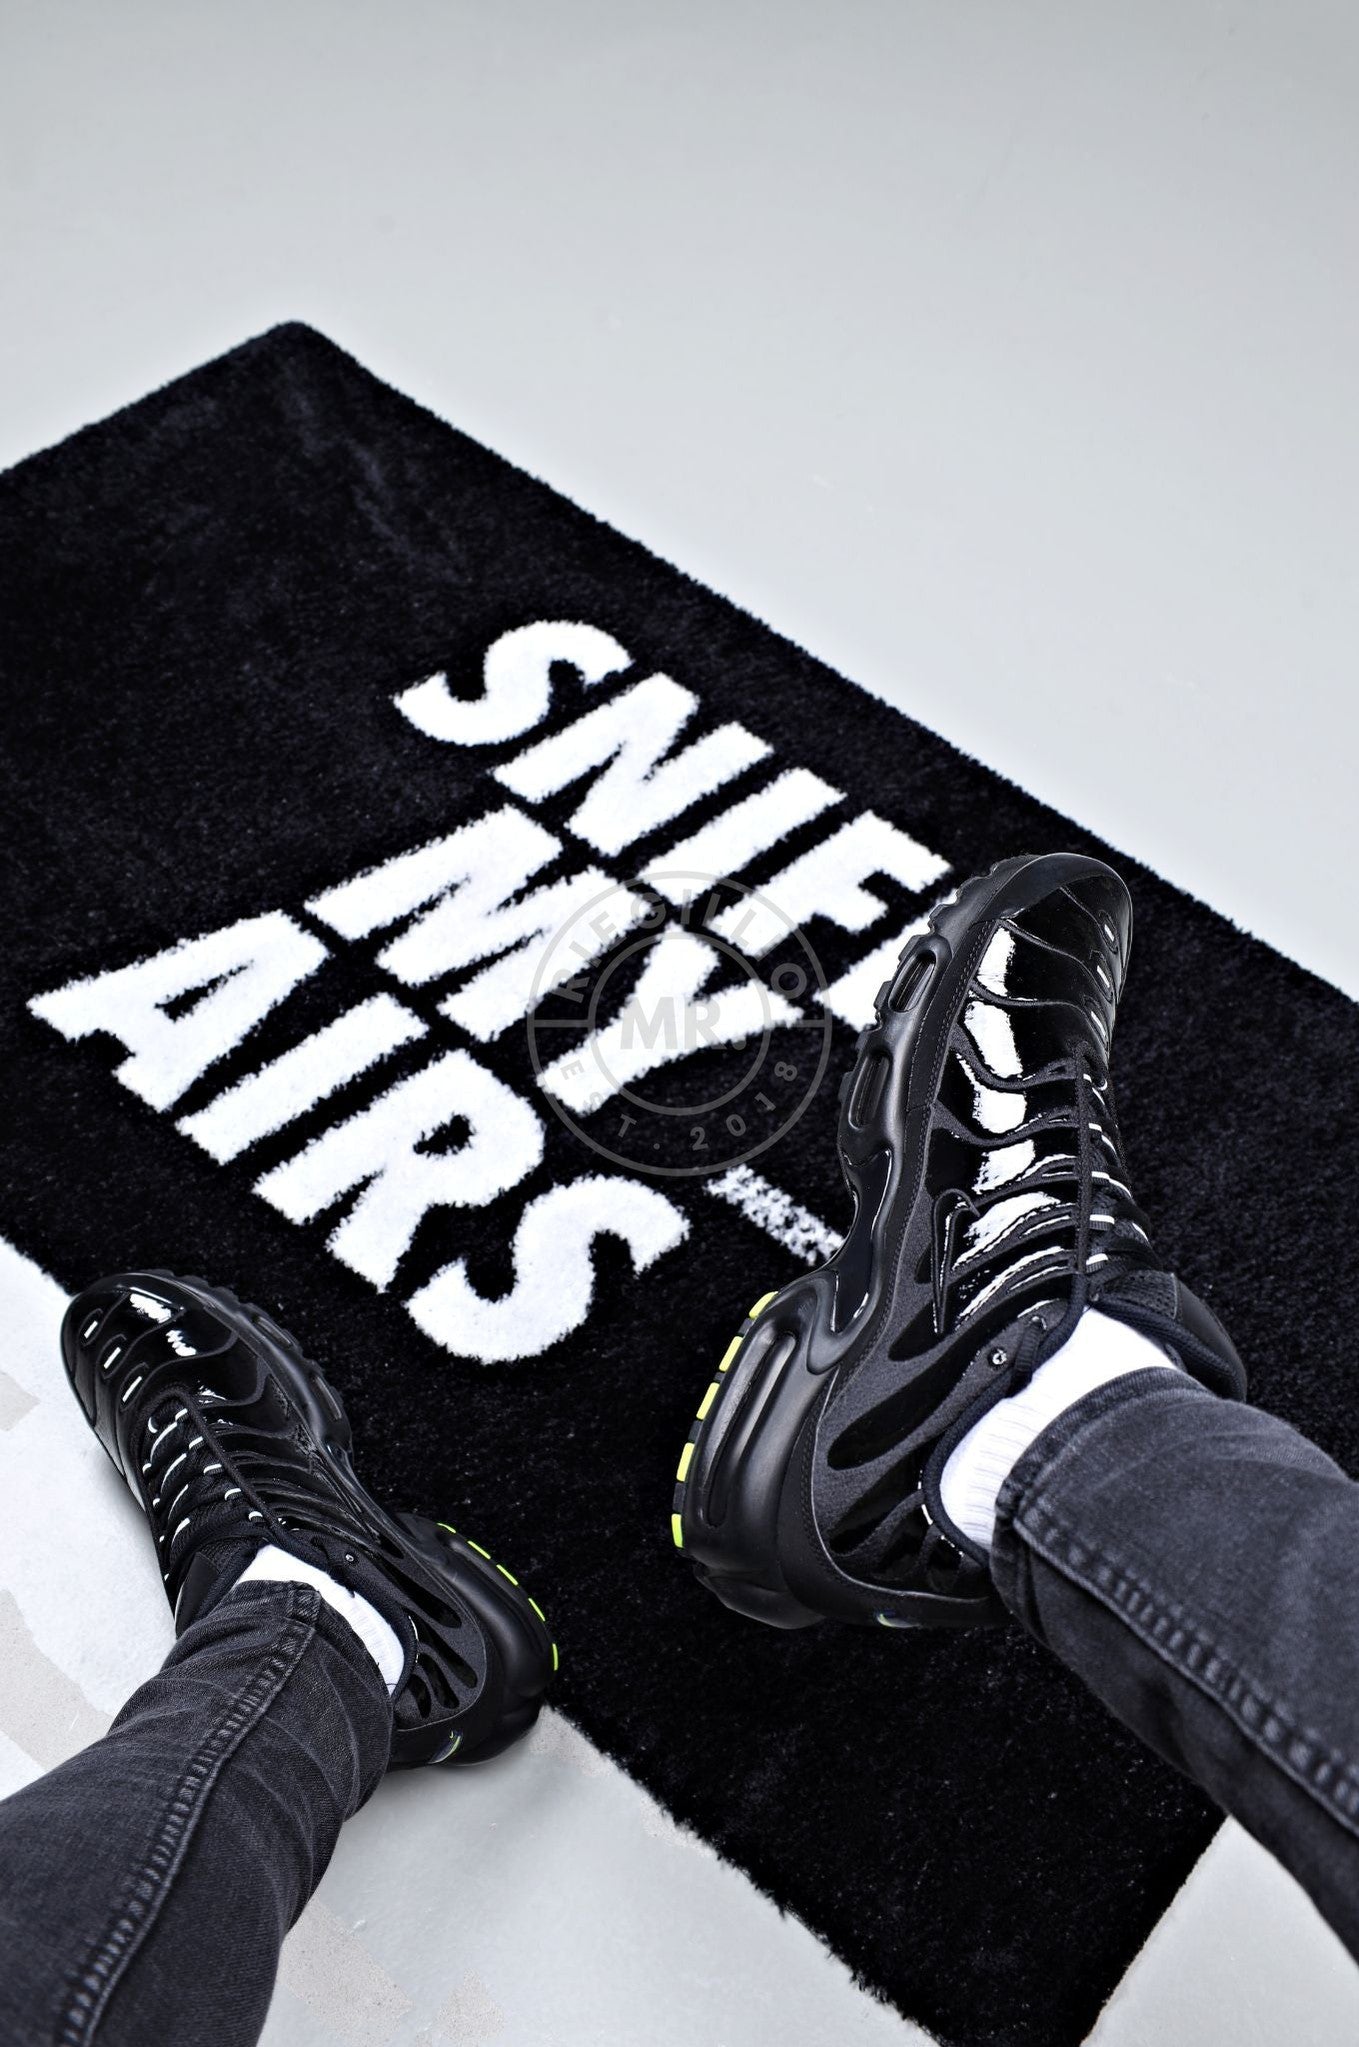 Doormat - SNIFF MY AIRS - Black at MR. Riegillio